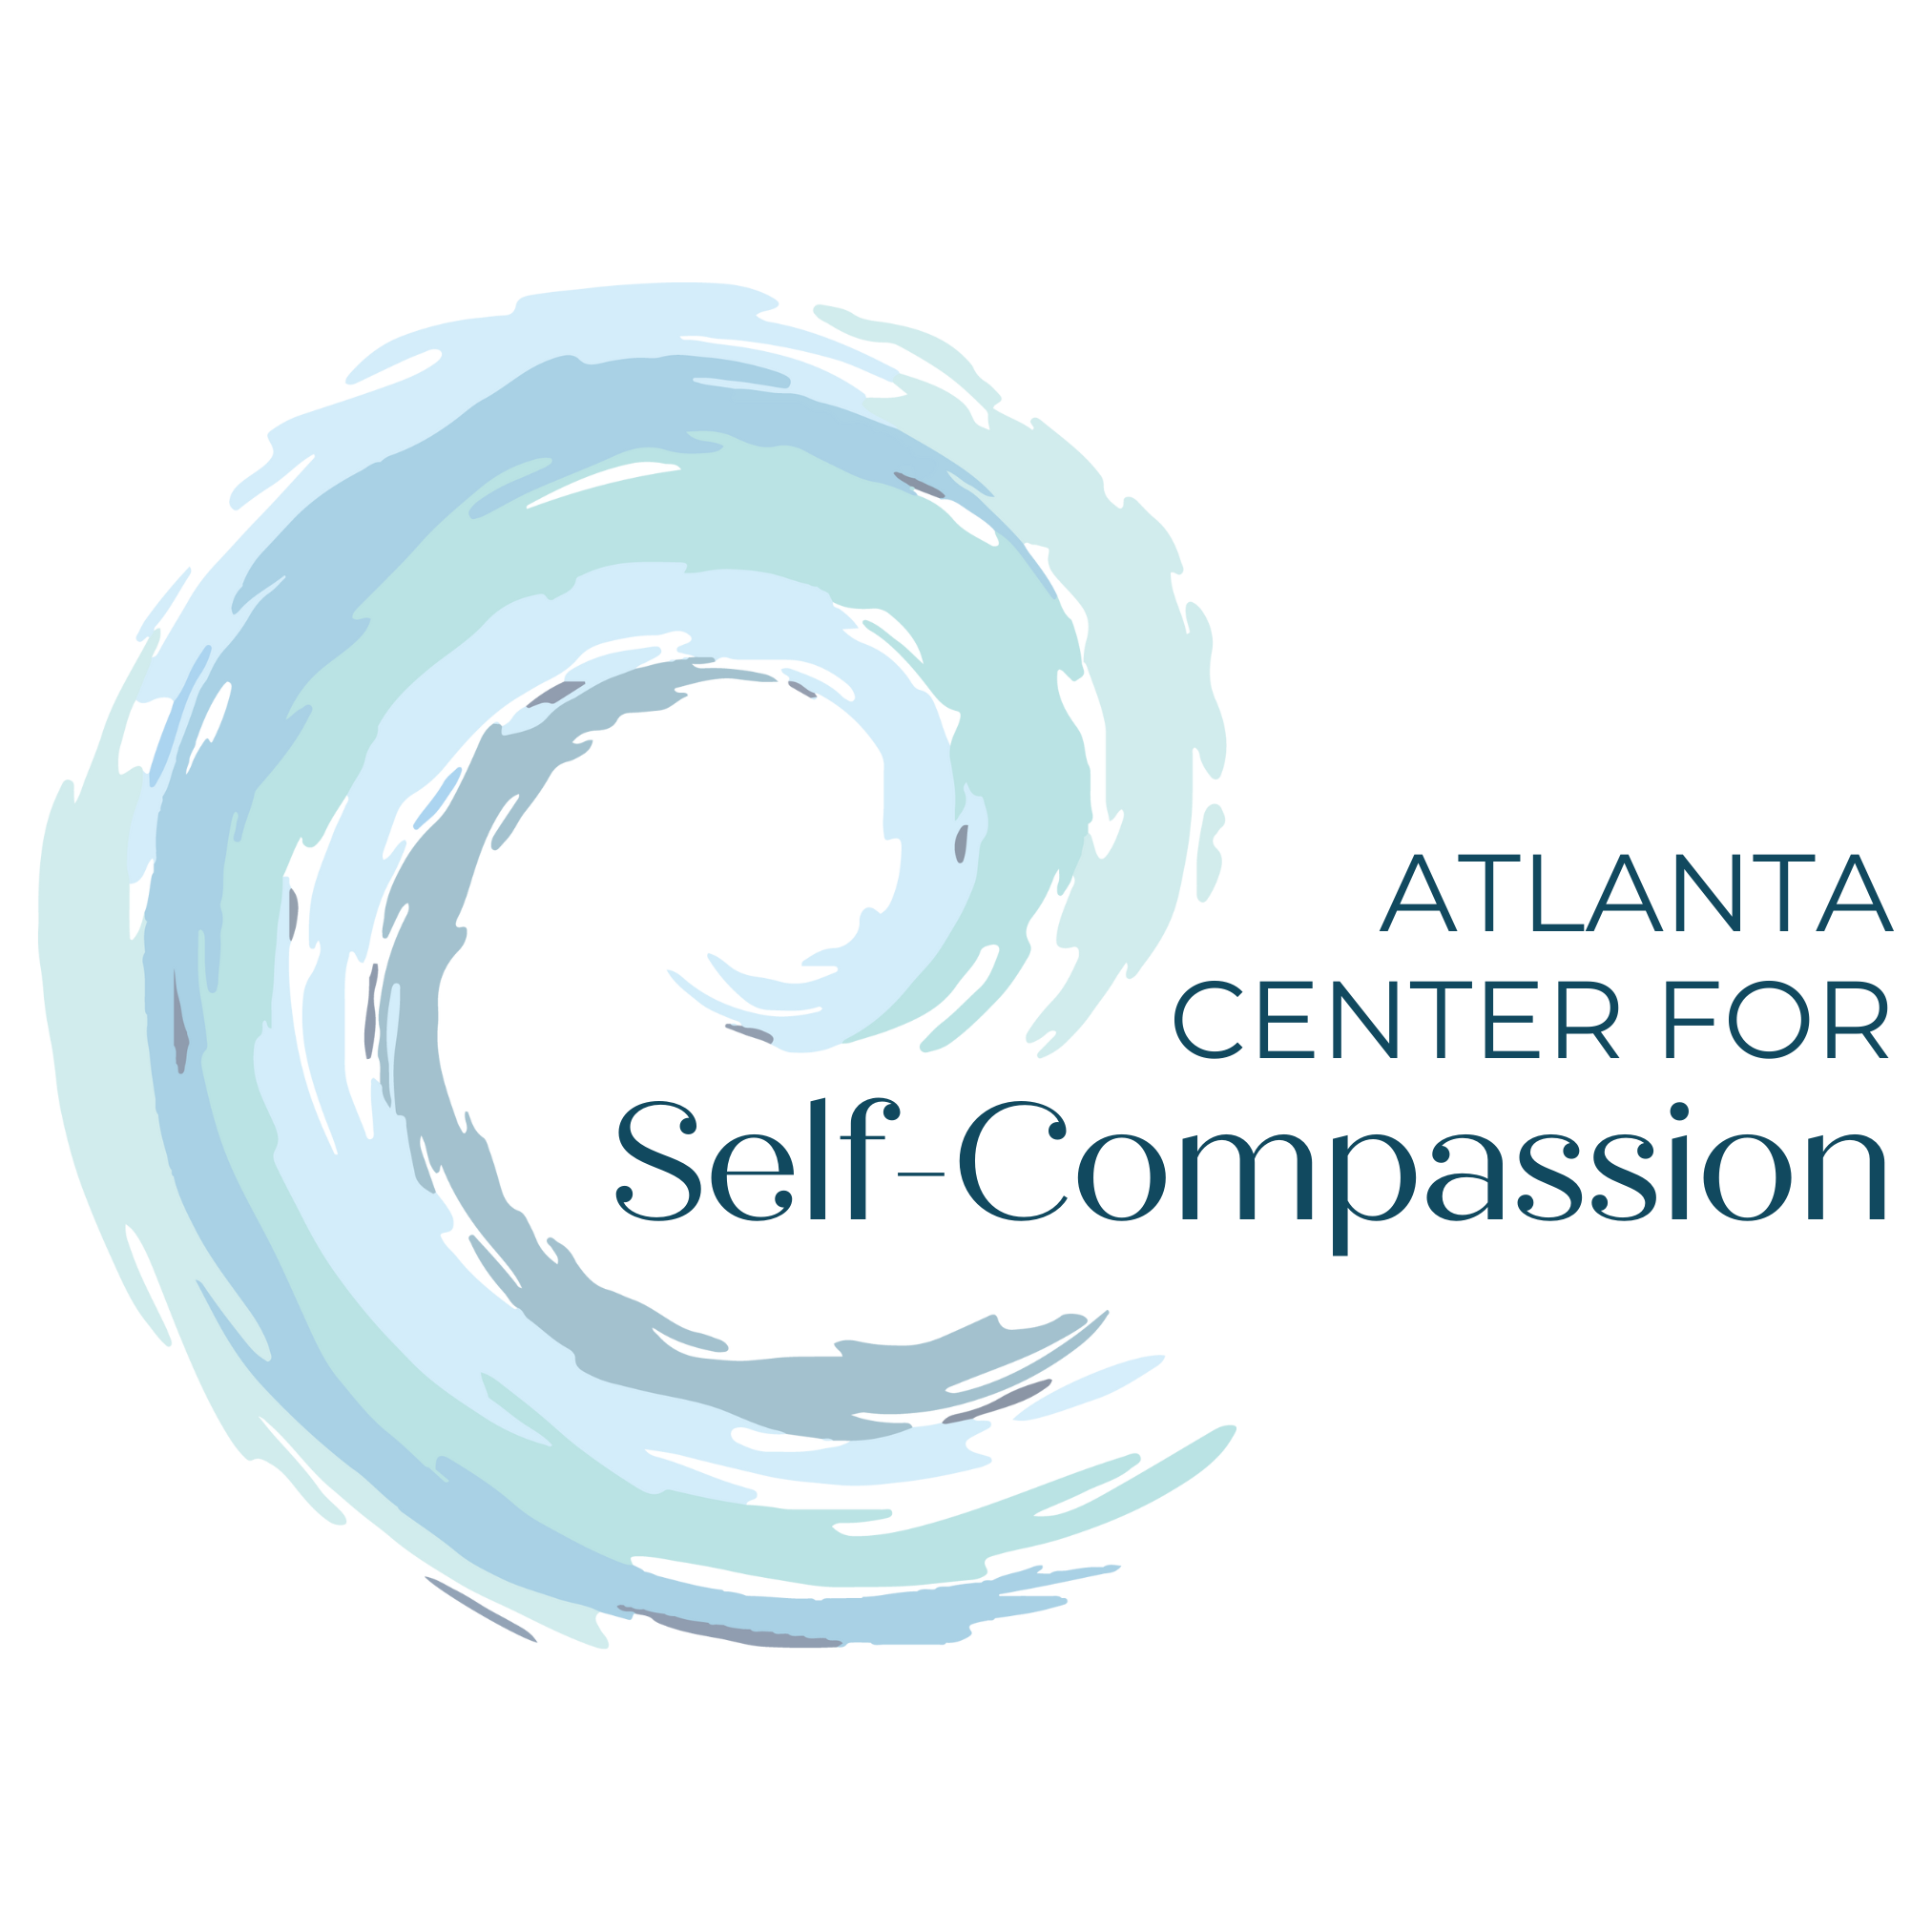 Atlanta Center for Self-Compassion logo